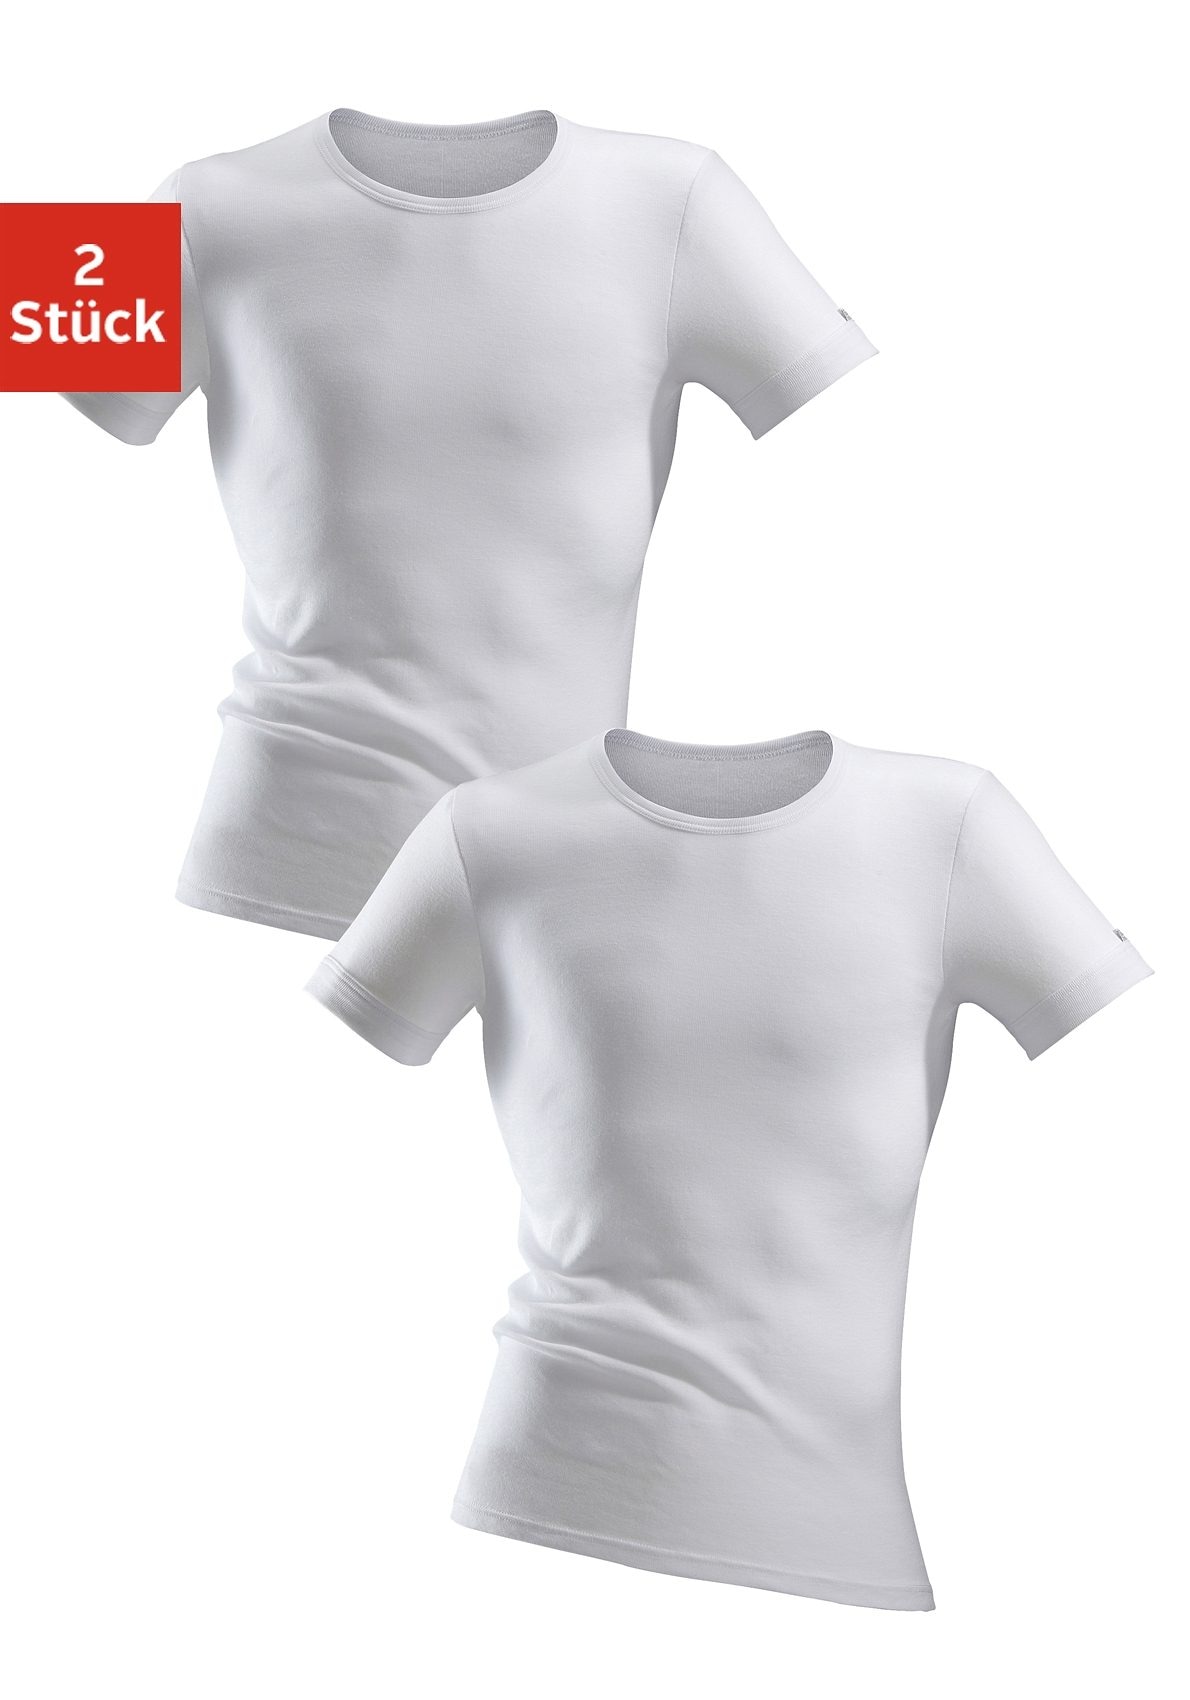 clipper exclusive unterhemd, (2 st.), spÃ¼rbar weich und glatt - in feinripp, unterziehshirt, kurzarm t-shirt weiss